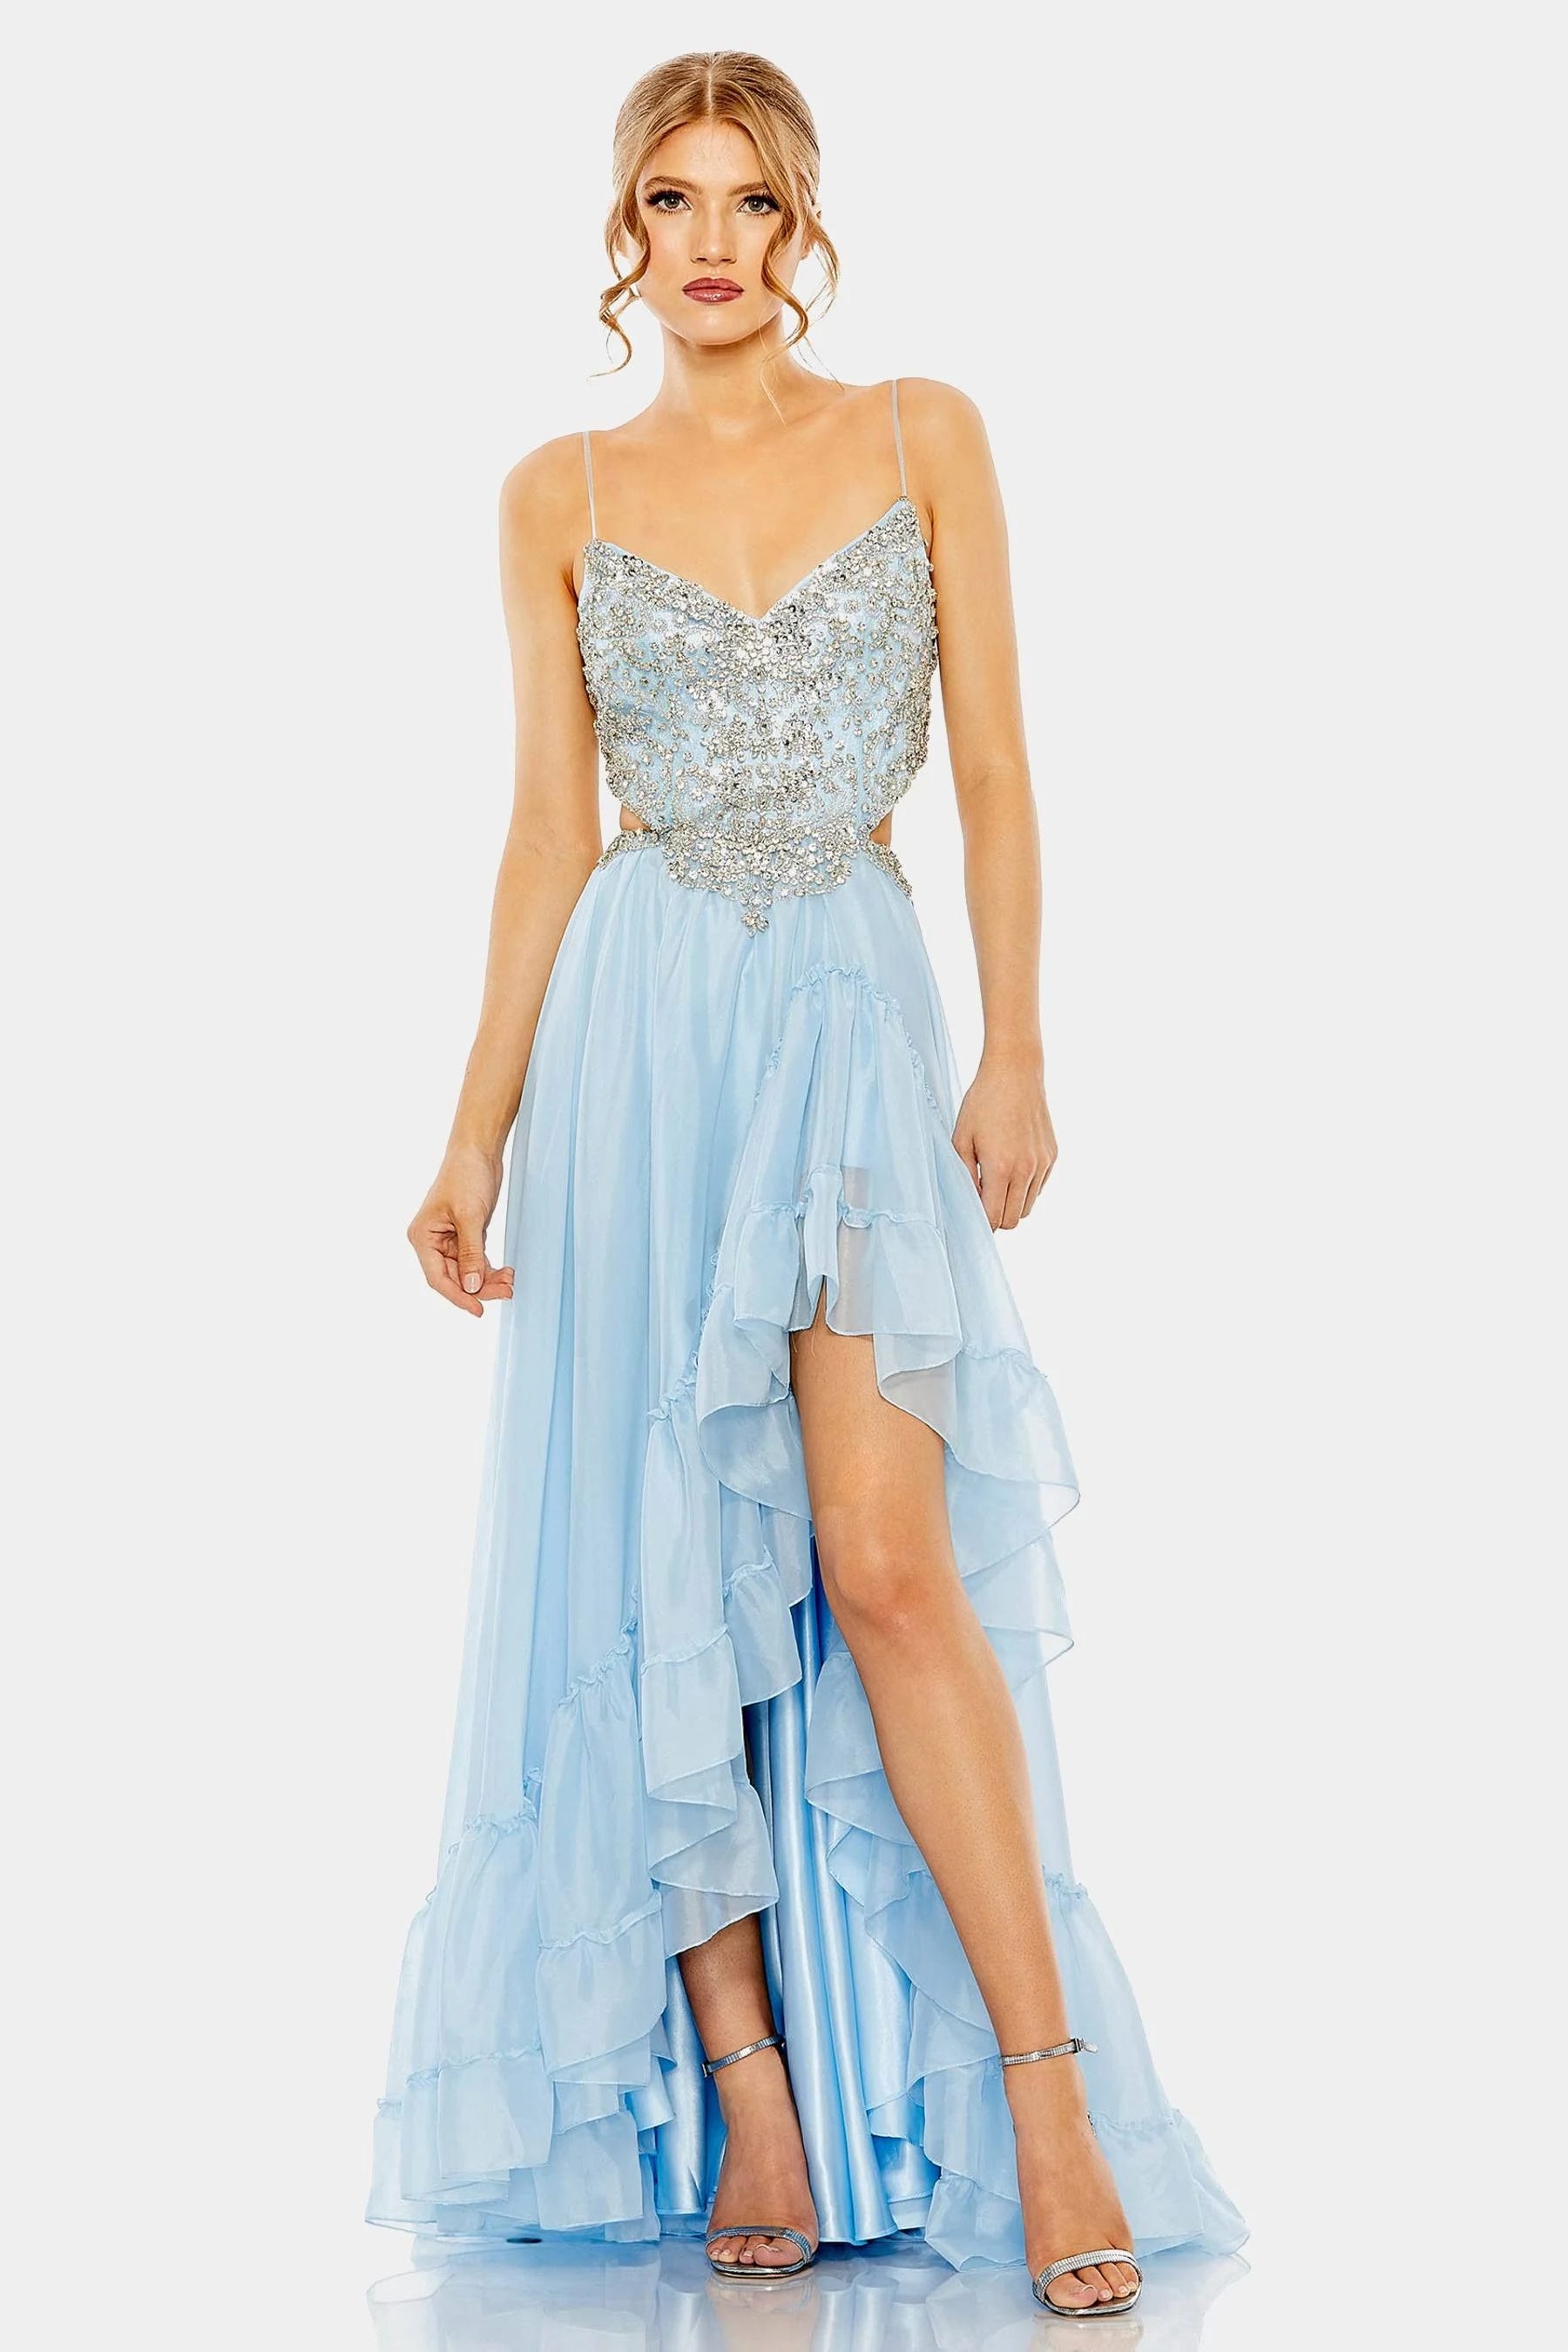 Elegant Powder Blue Cocktail Dress with Embellished Open Back | Image